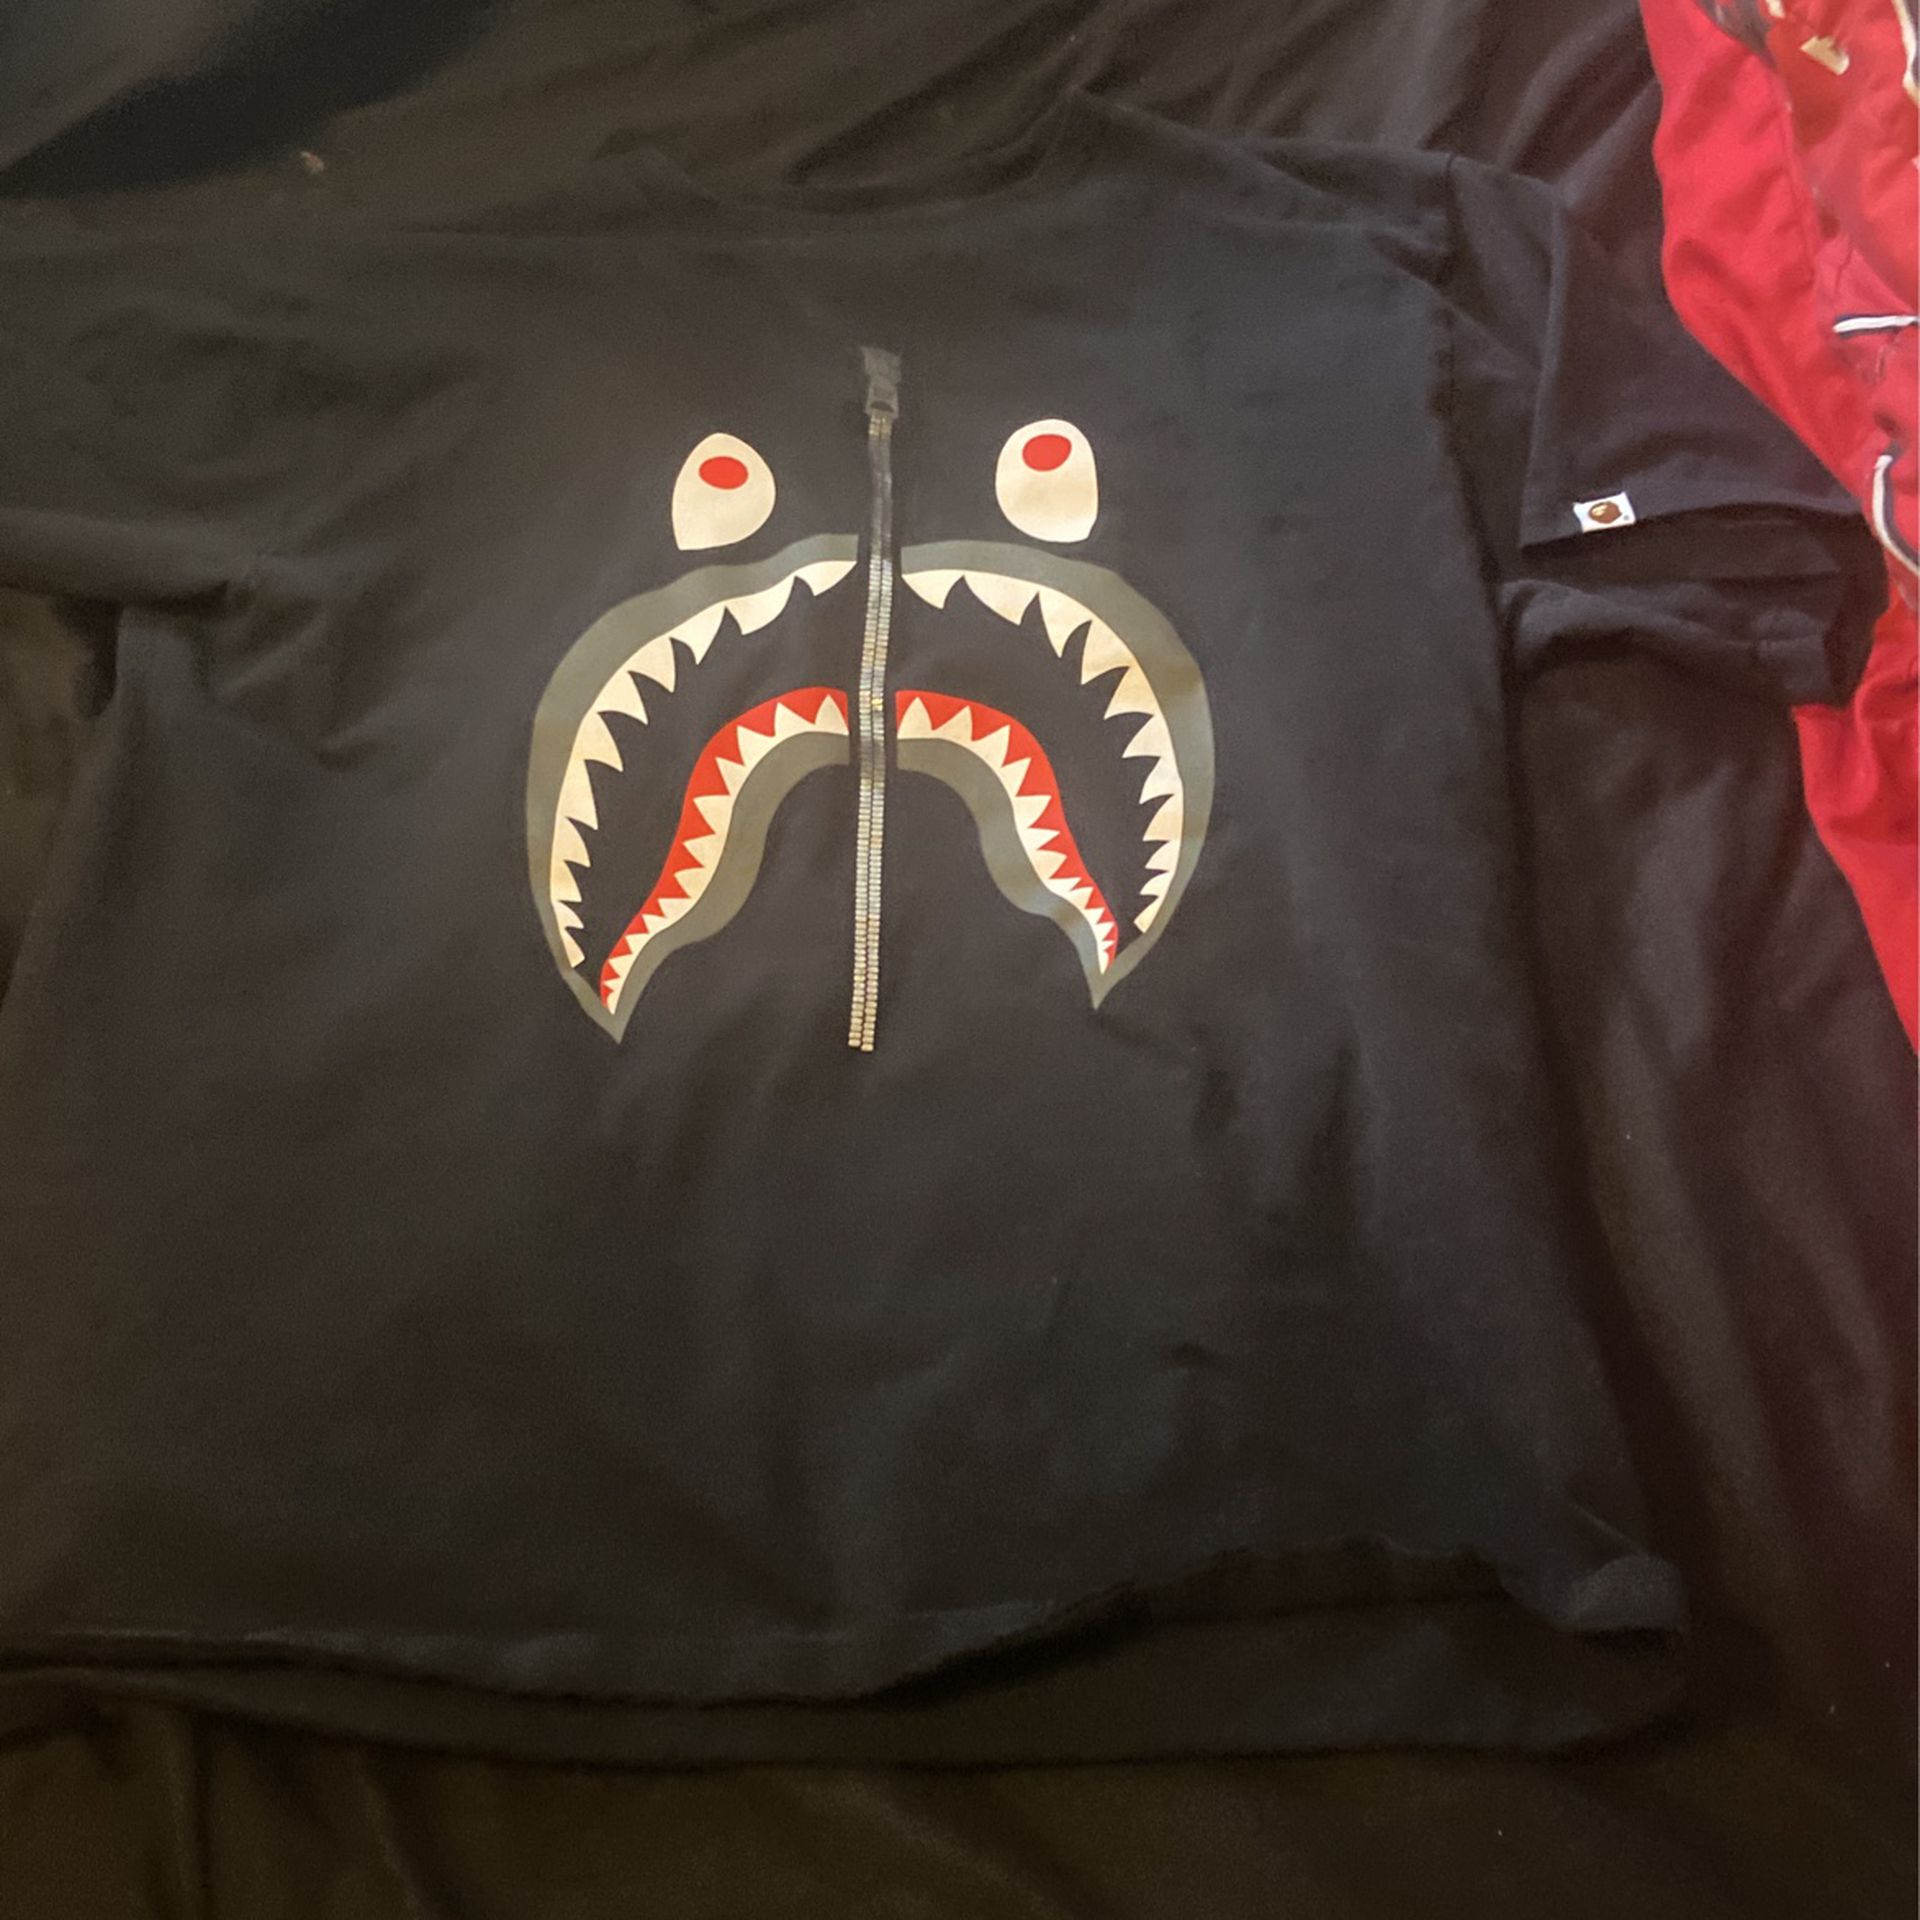 Bape Camo Shark Shirt